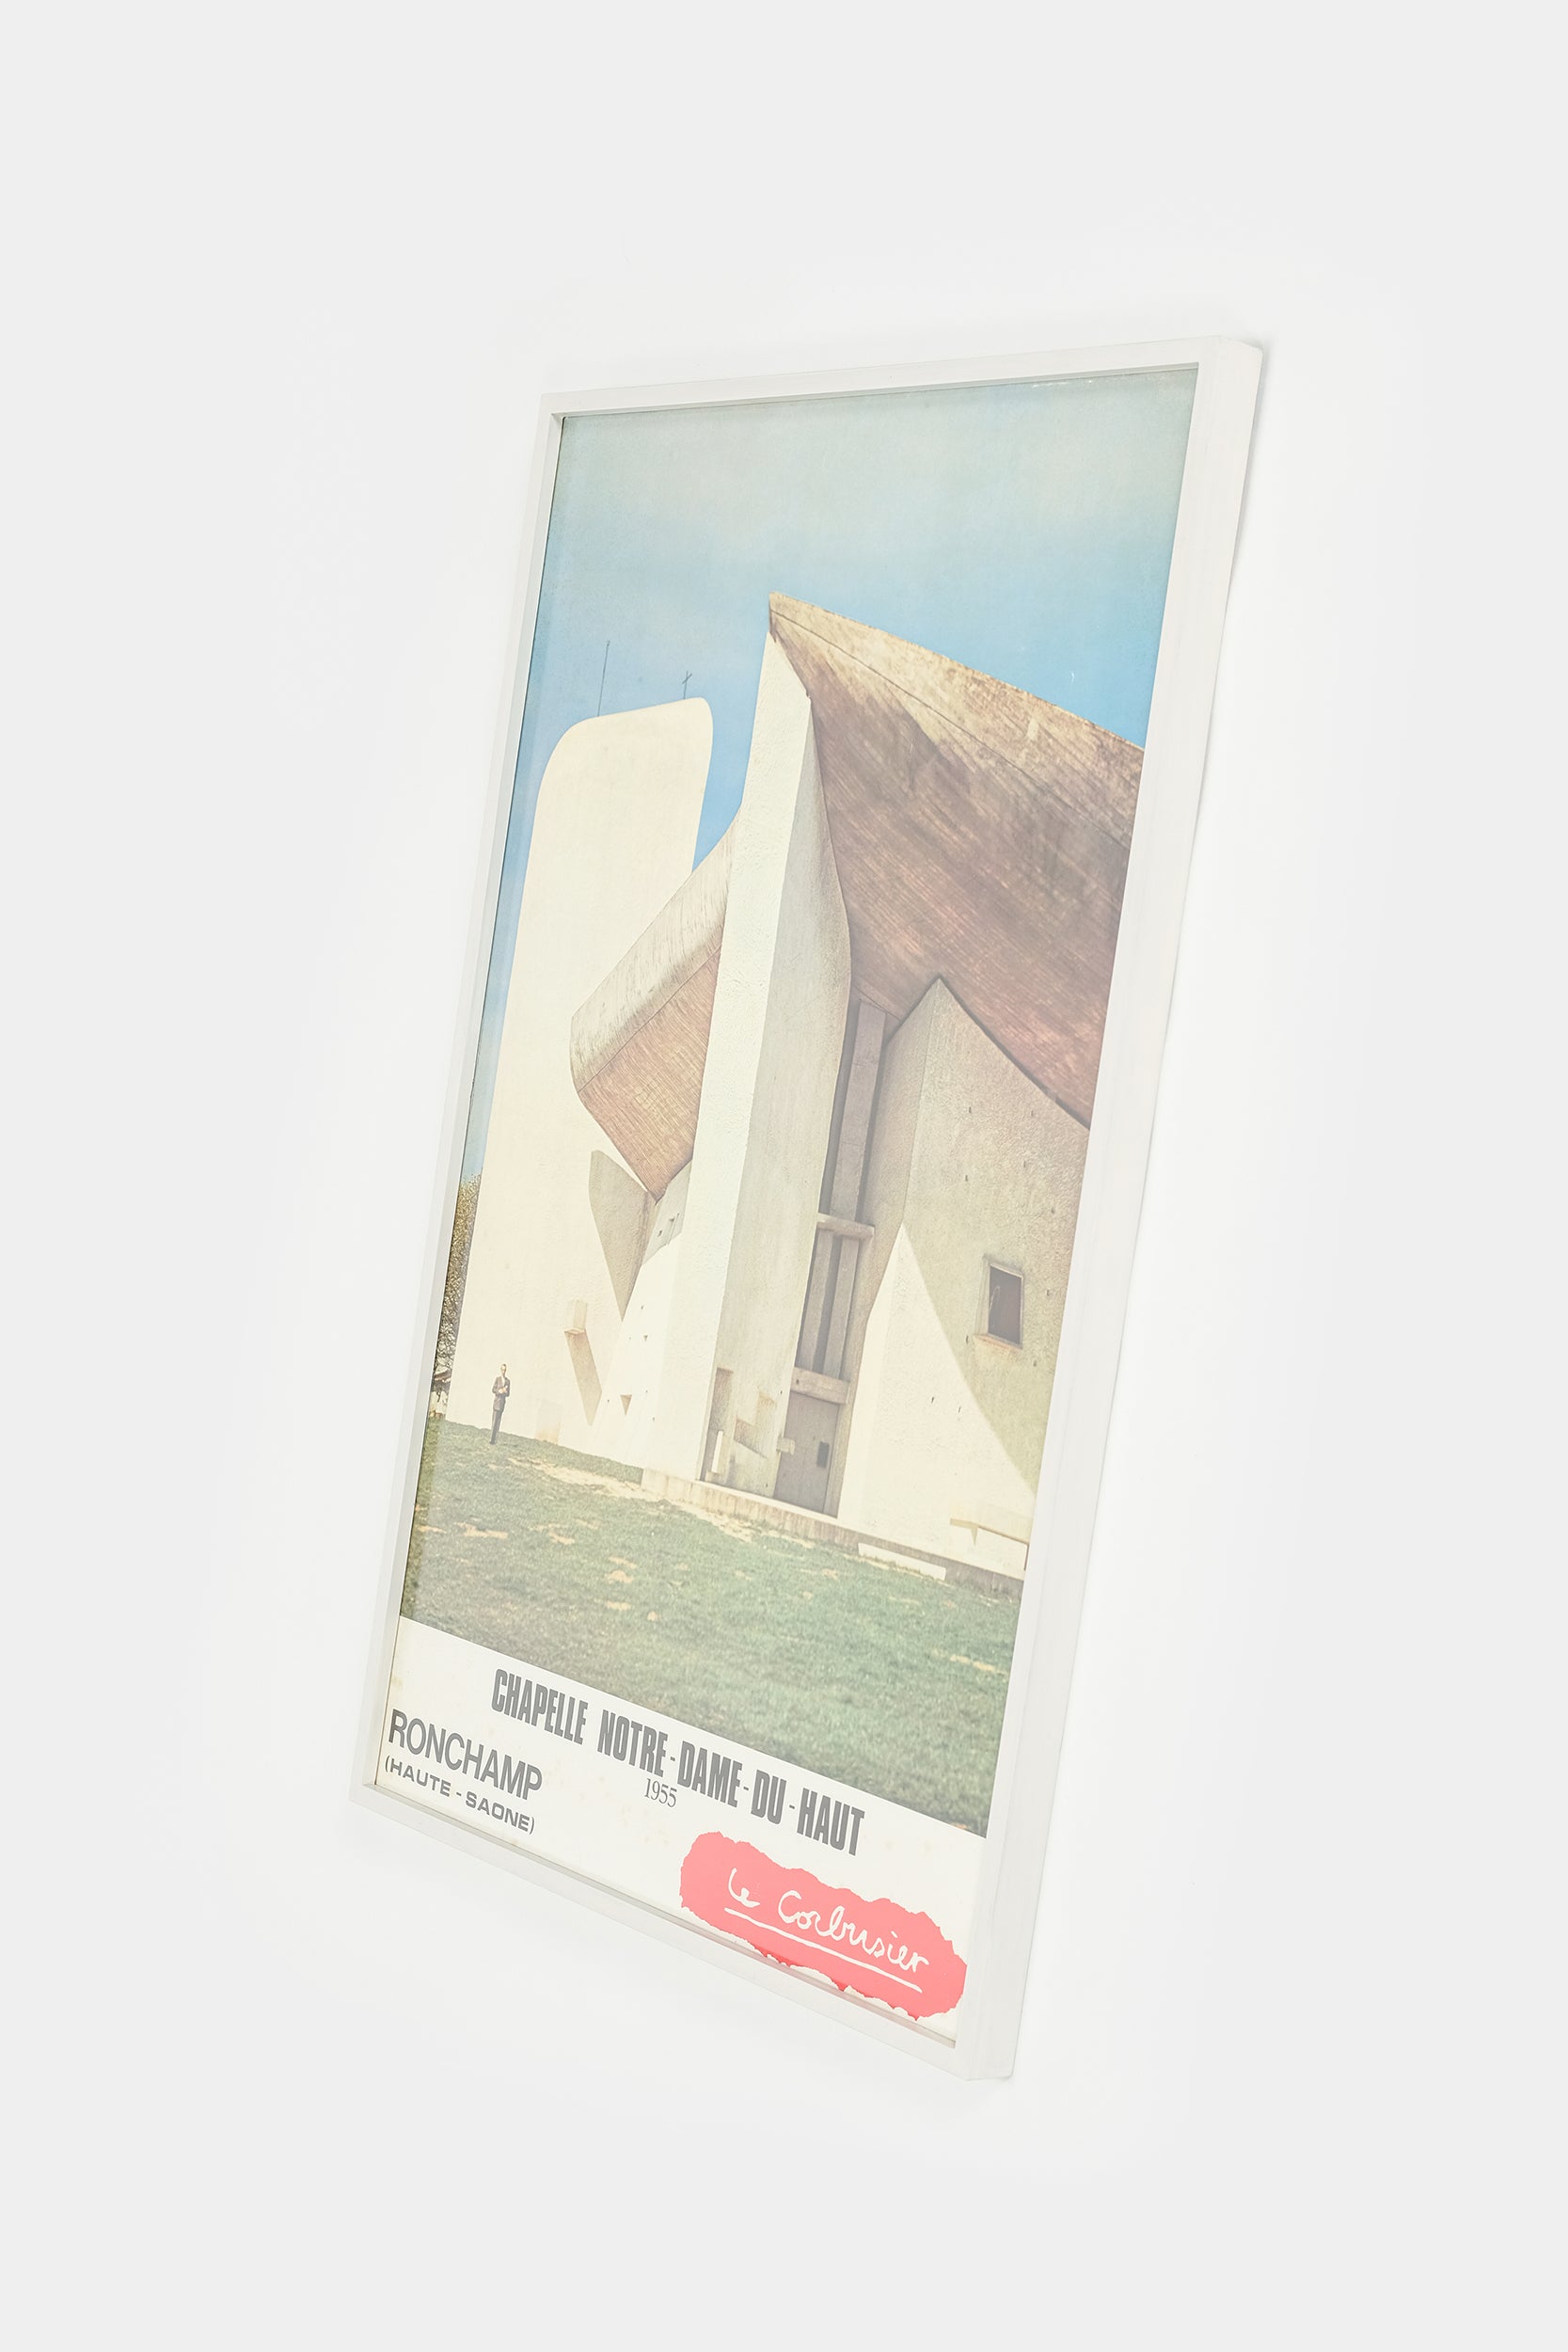 Plakat Chapelle Notre-Dame-Du-Haute le Corbusier 1955